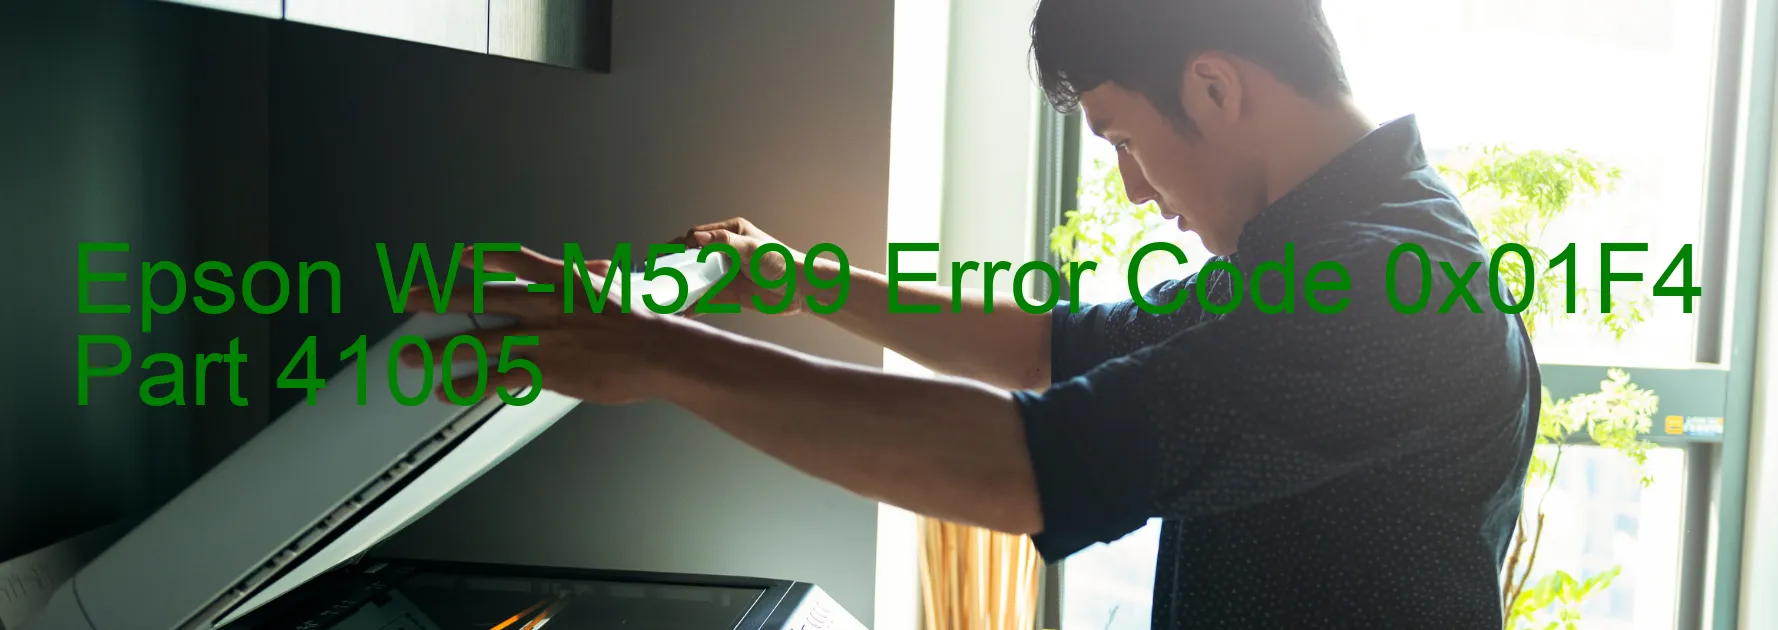 Epson WF-M5299 Error Code 0x01F4 Part 41005